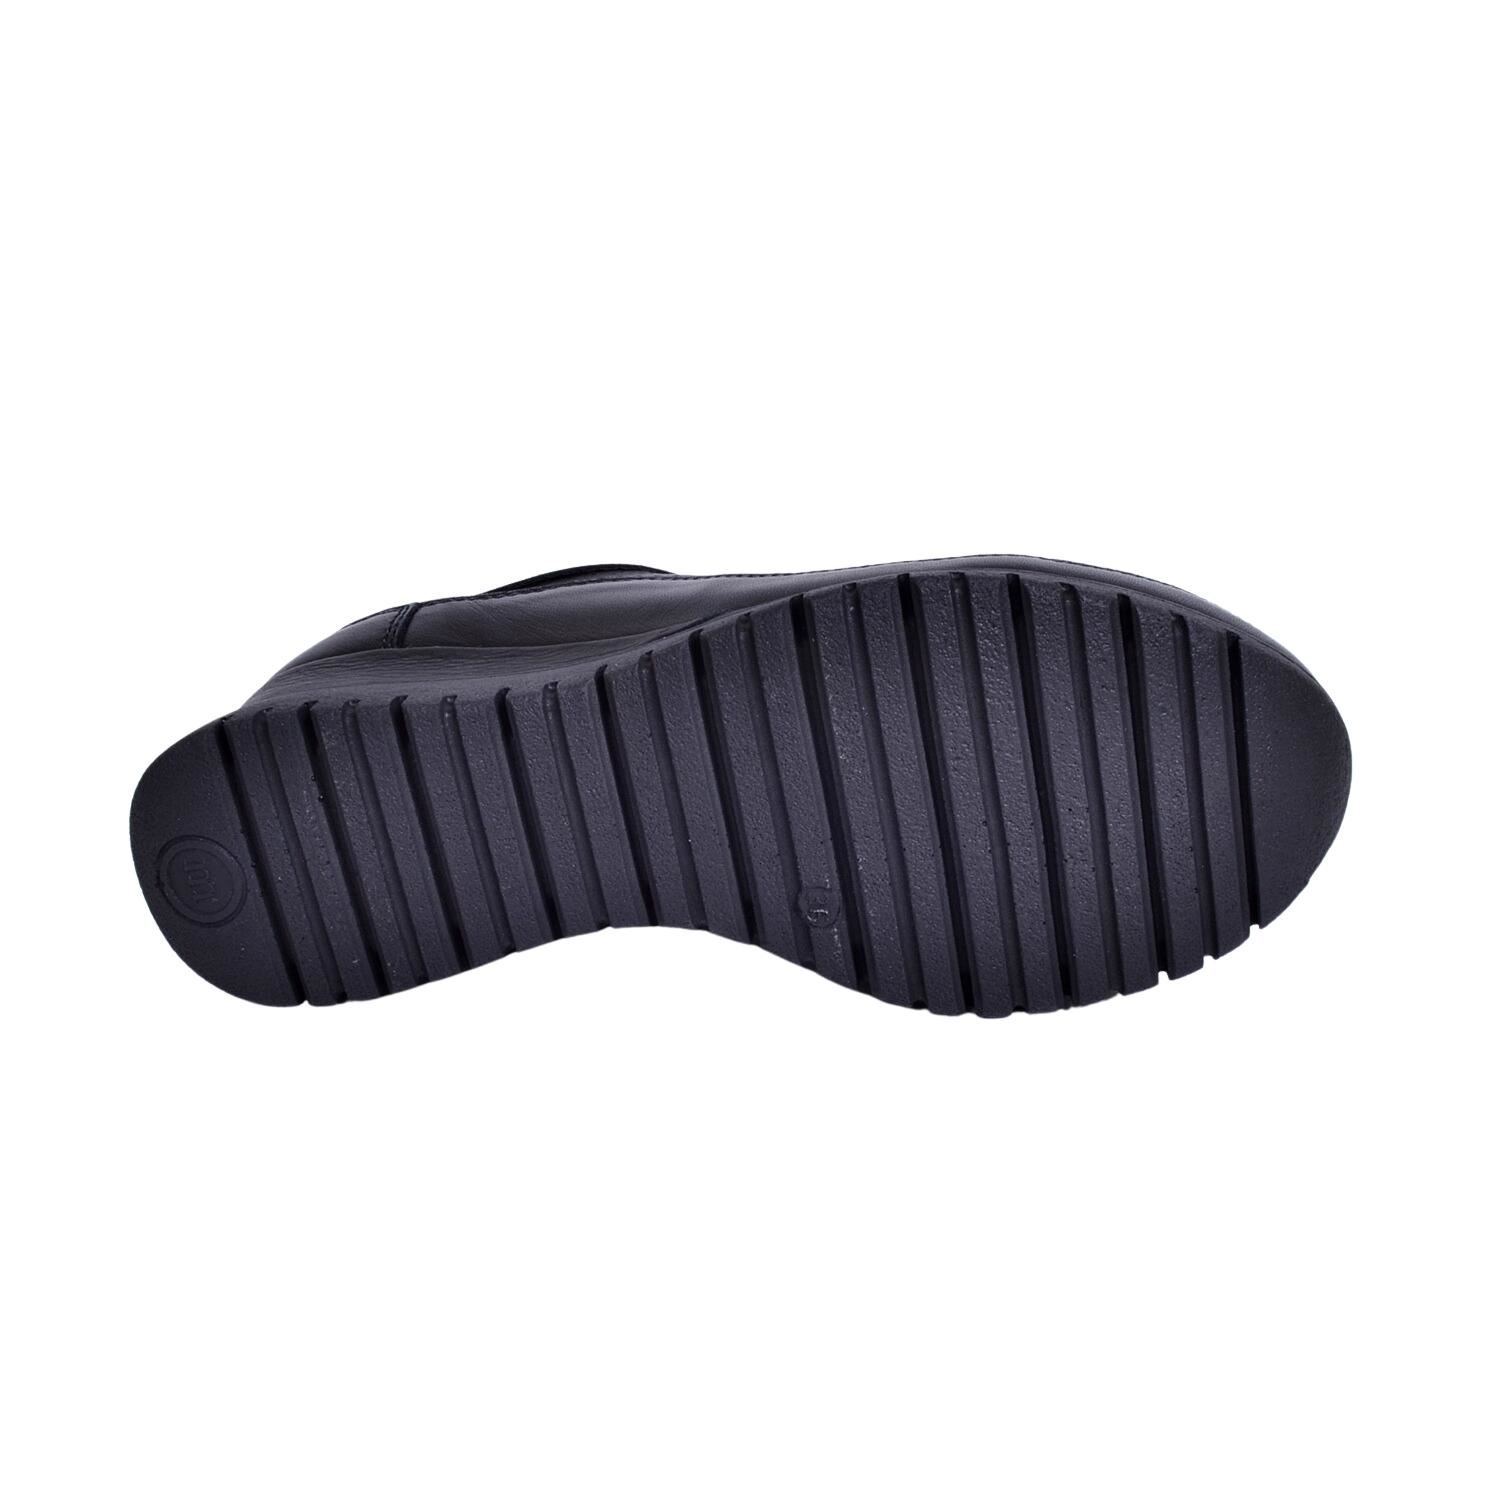 Mammamia D23YA-3725 Dolgu Topuk Kadın Siyah Deri Ayakkabı